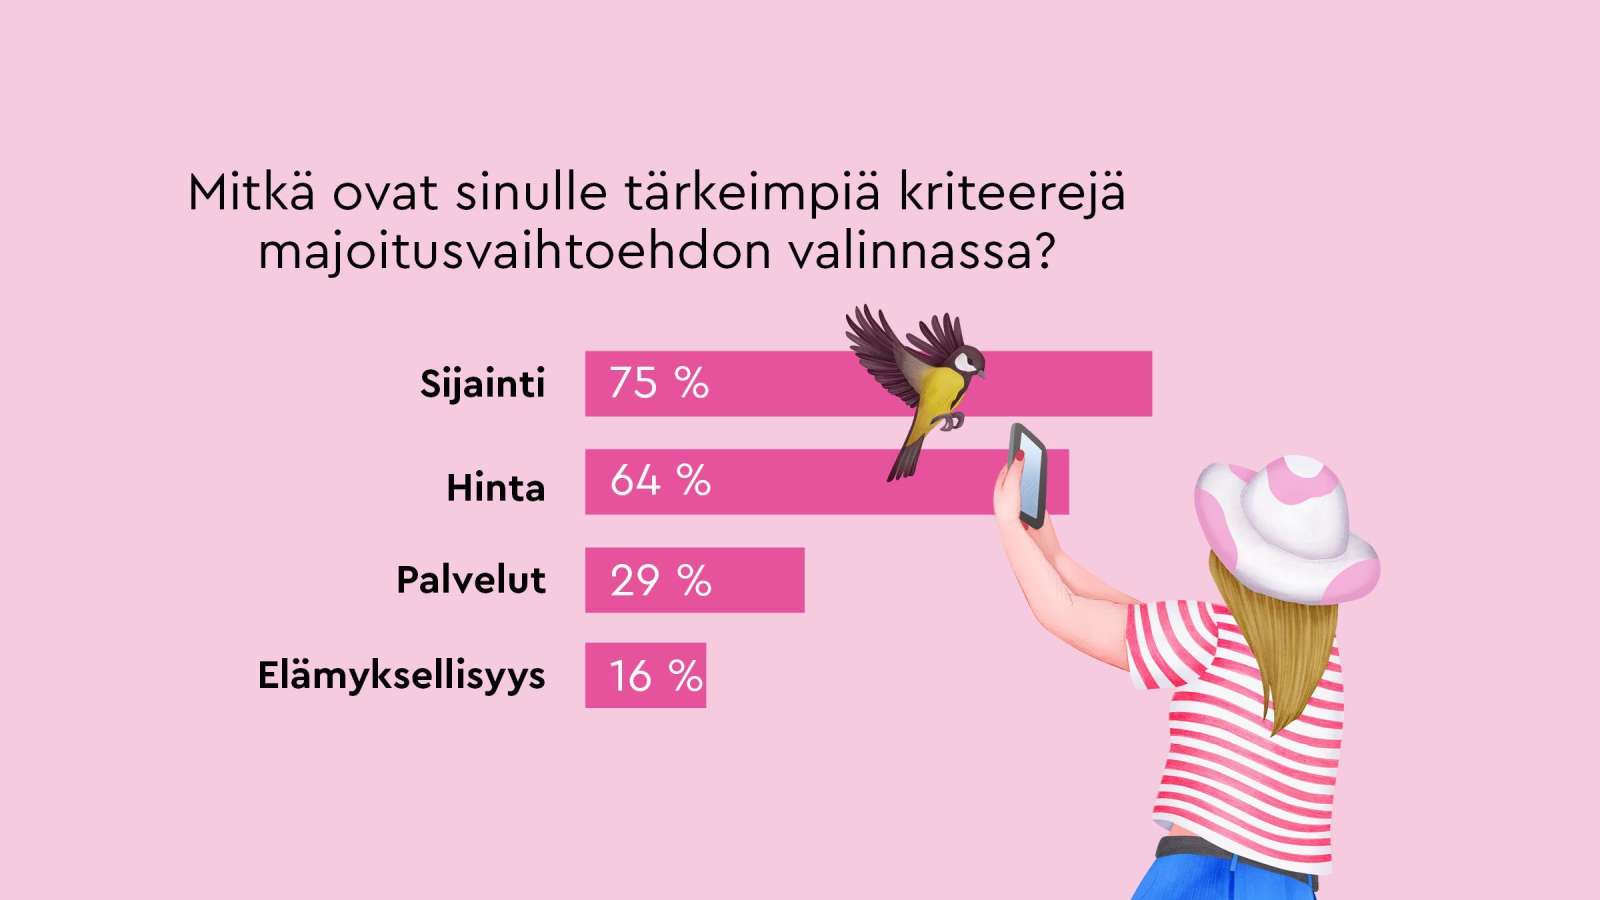 Sijainti on tärkein kriteeri, kun suomalaiset valitsevat majoitusvaihtoehtoa